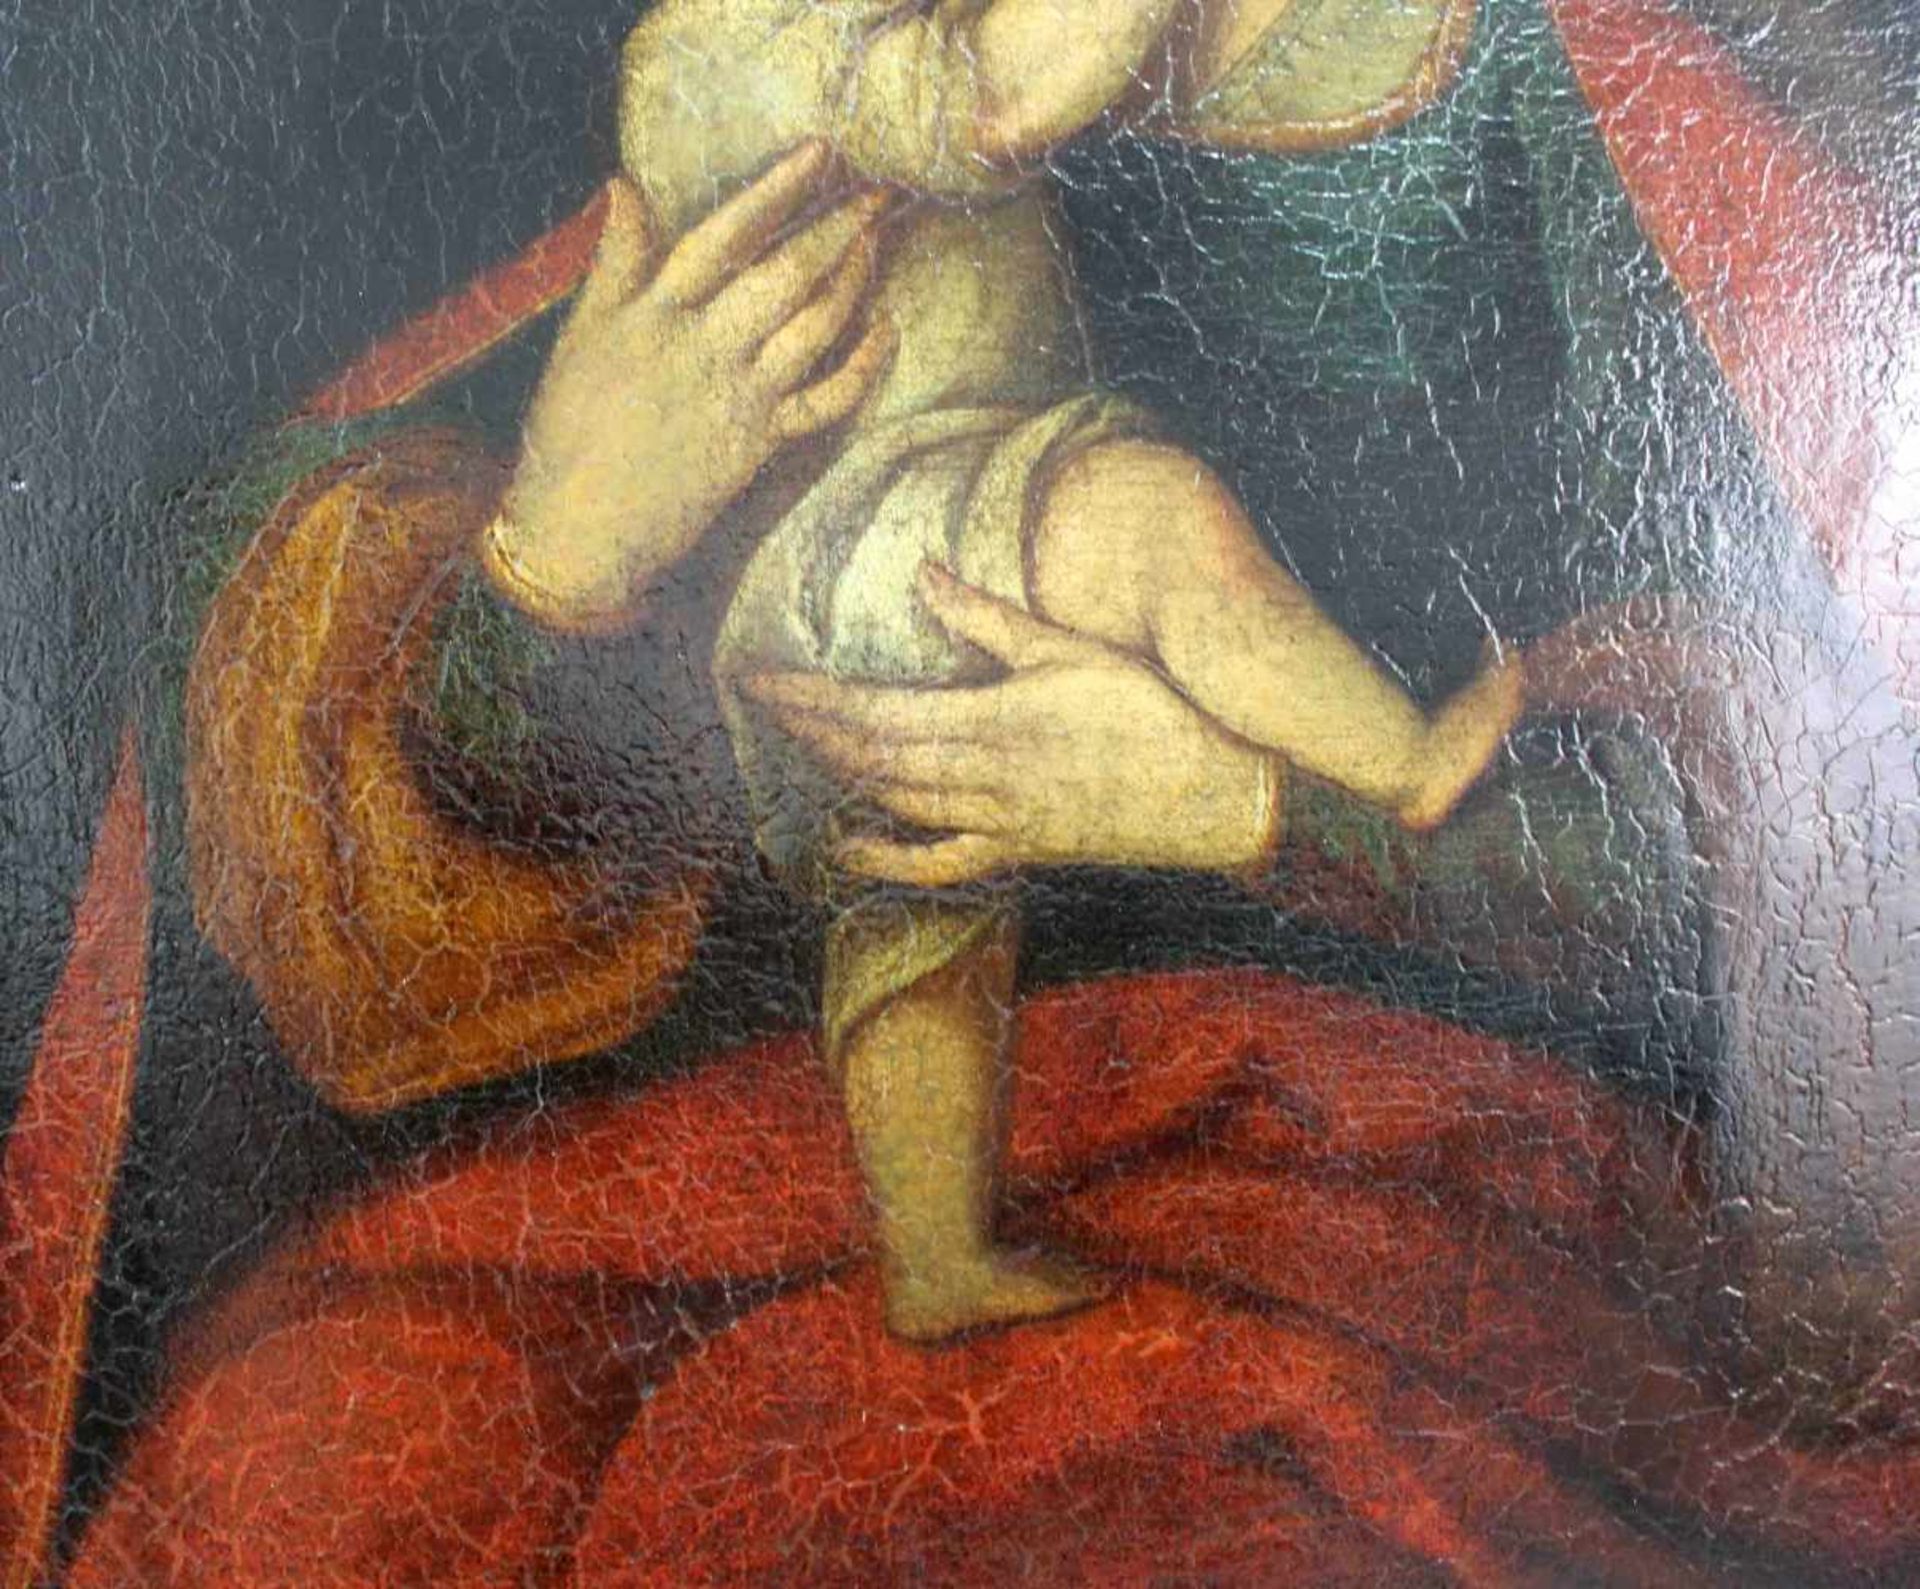 UNSIGNIERT (XVIII). Maria mit Jesus.66 cm x 54 cm. Öl auf Leinwand, u. a. doubliert. Keine - Bild 5 aus 7